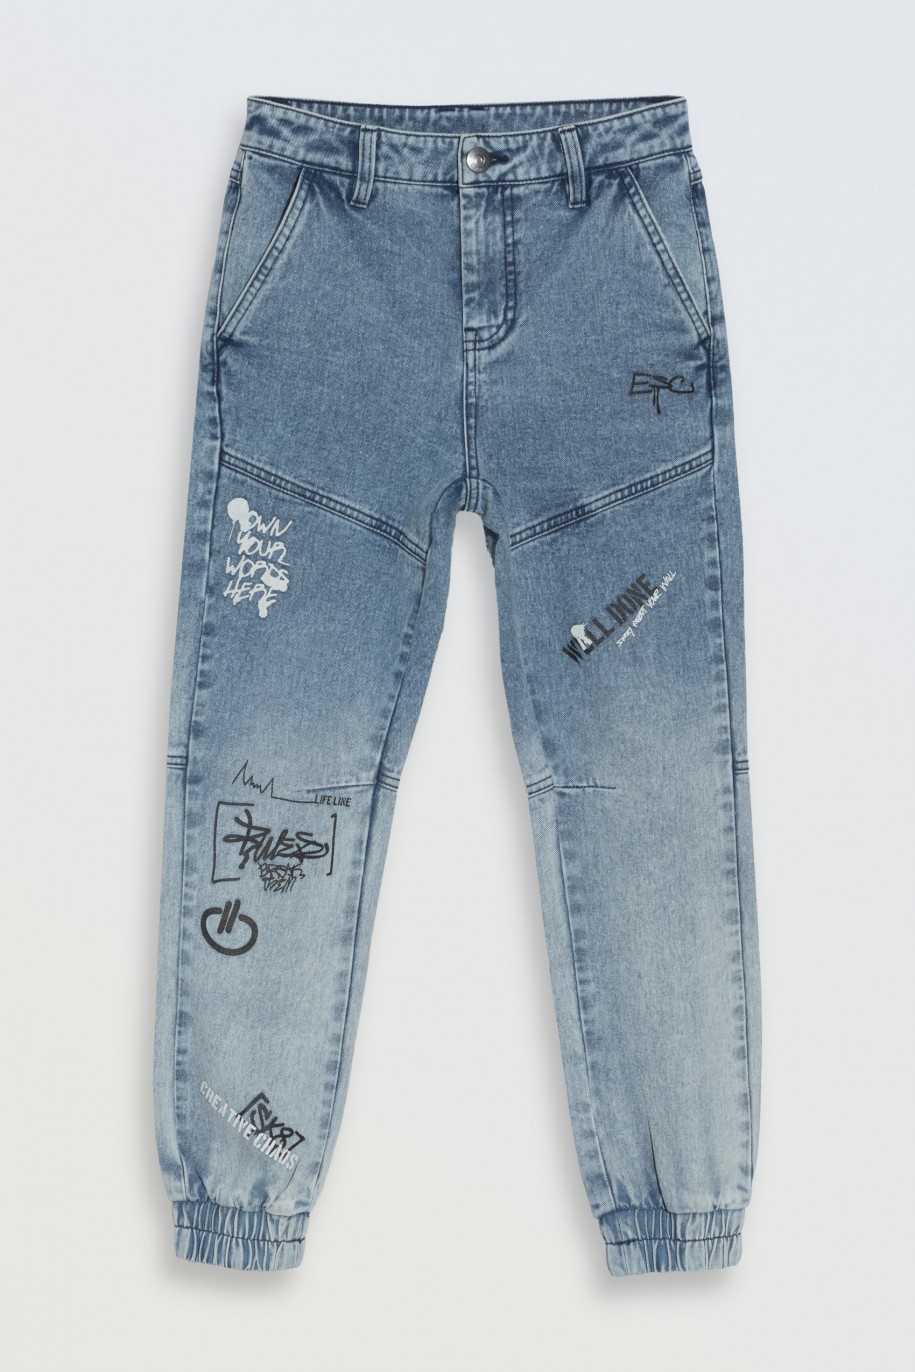 Niebieskie spodnie jeansowe typu joggery z nadrukami na nogawkach - 46553